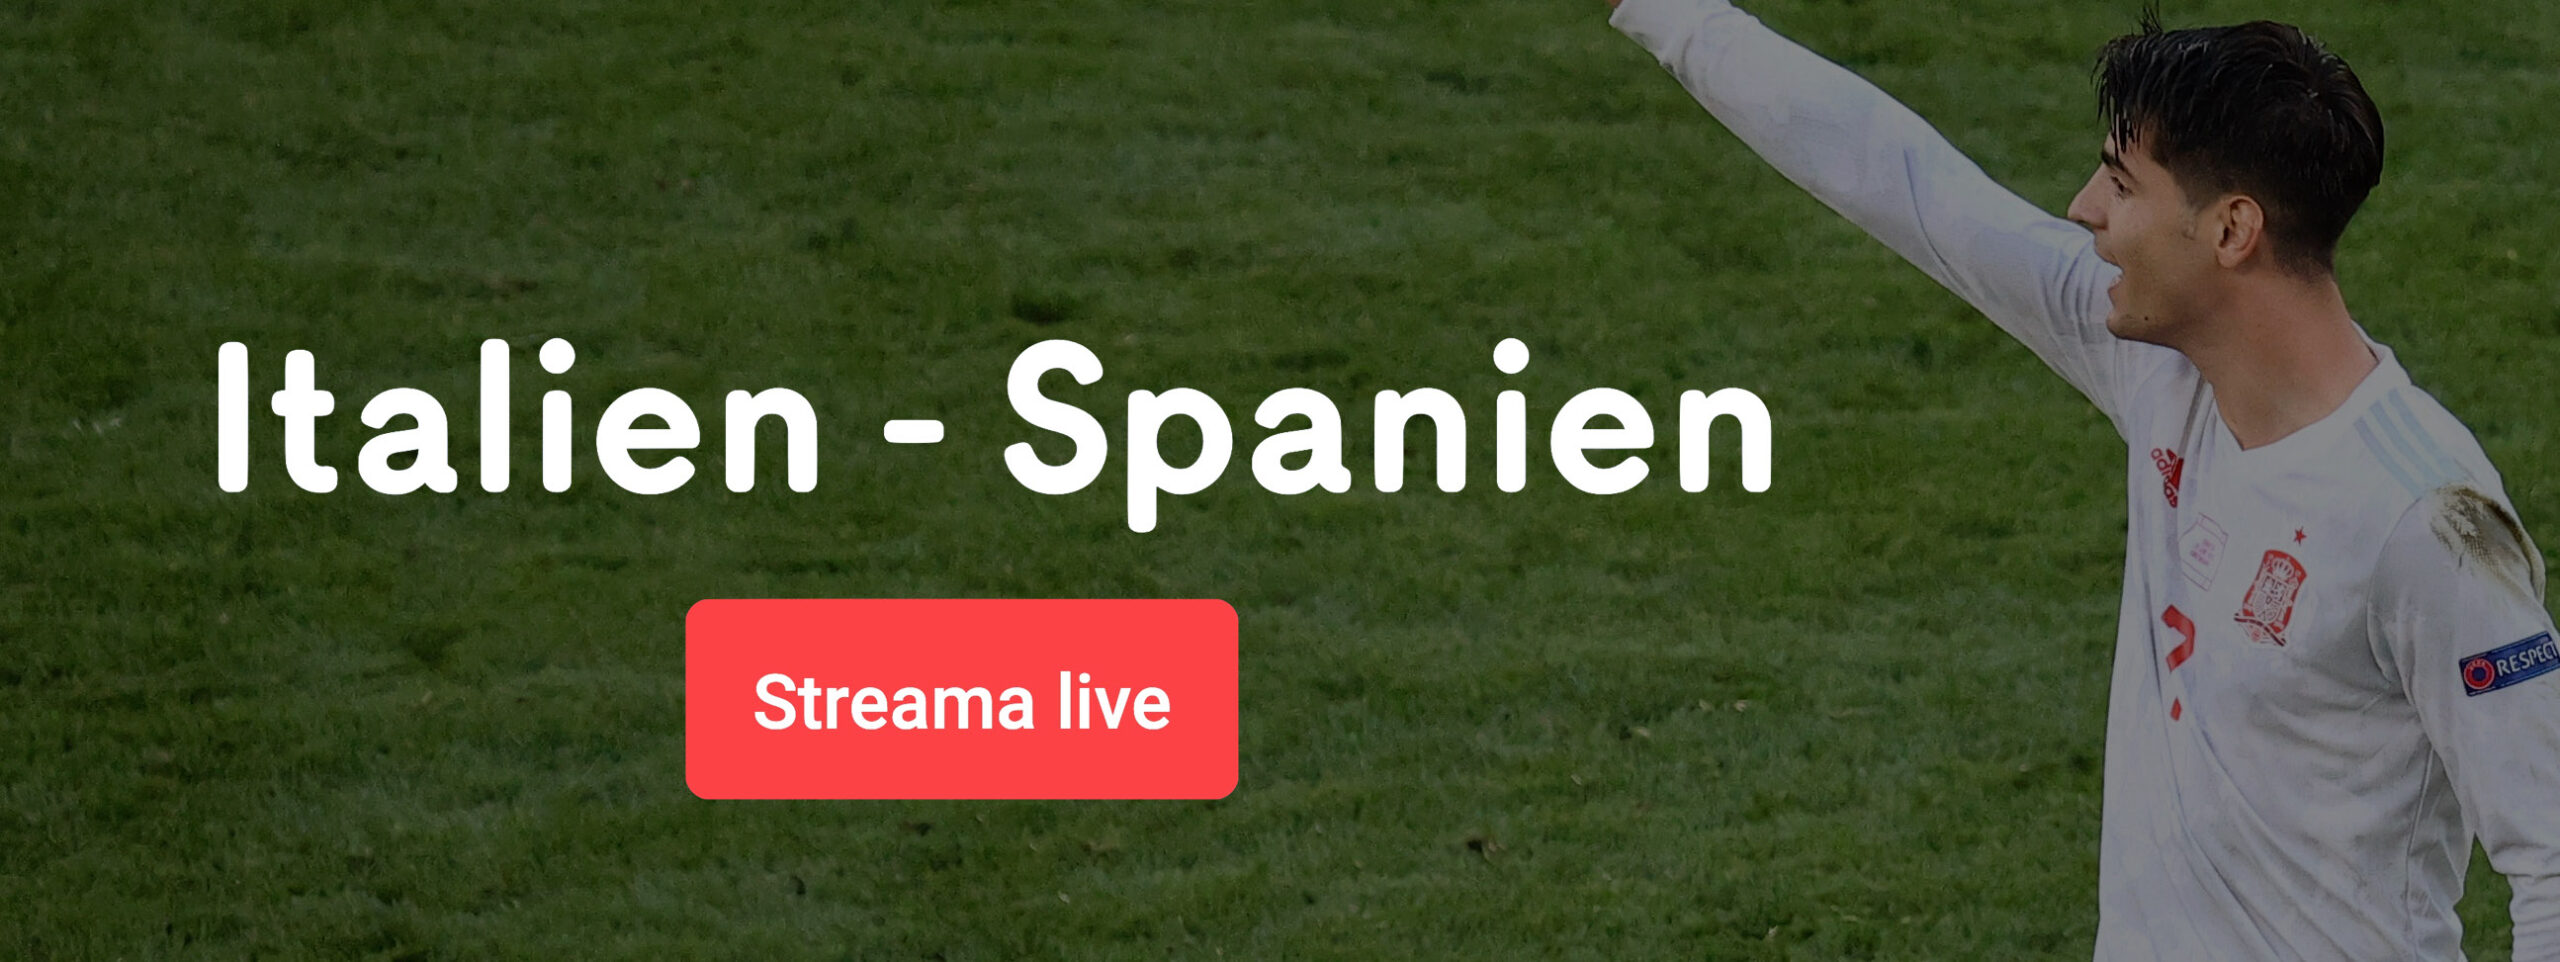 Streama Italien Spanien live online - allt om Italien vs Spanien live stream free!